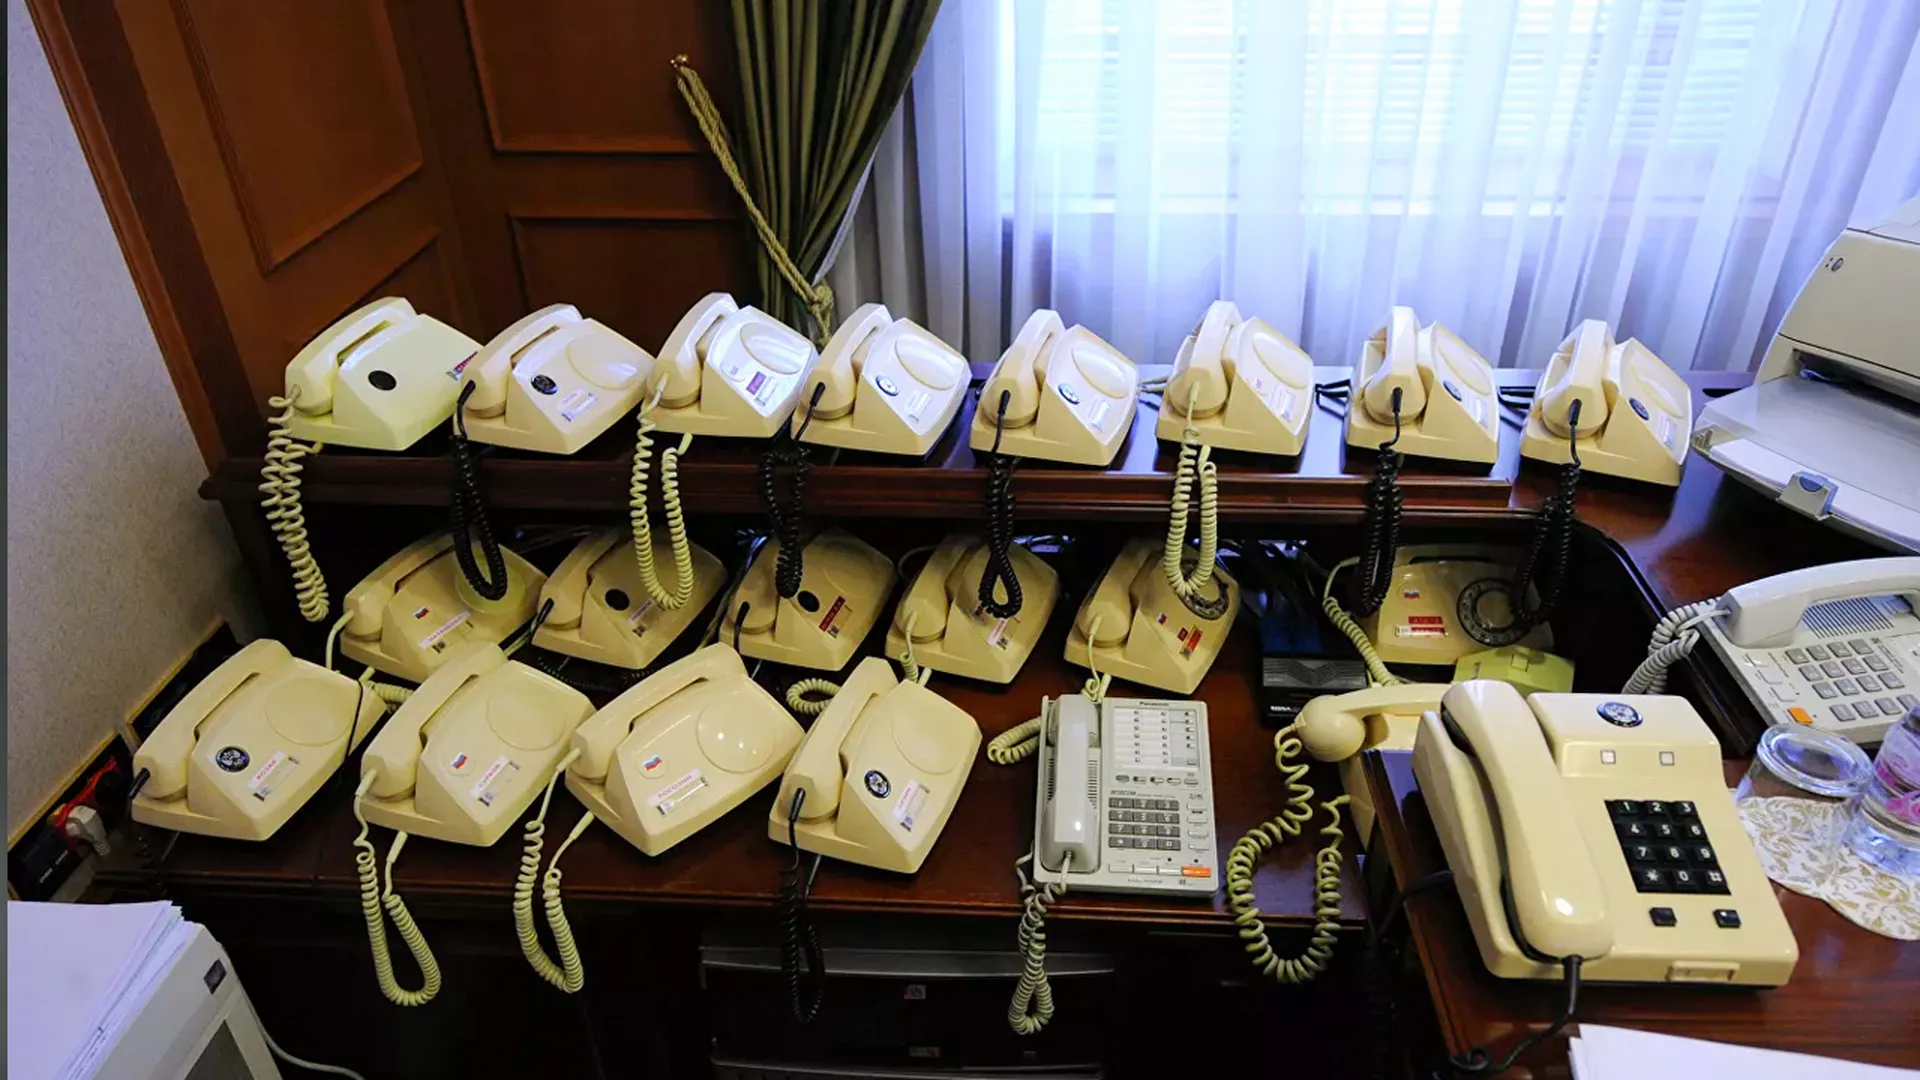 Атс 1 3. Телефонный аппарат Престиж-АТС. Аппарат правительственной связи. Правительственная связь. Телефонные аппараты в кабинете Путина.